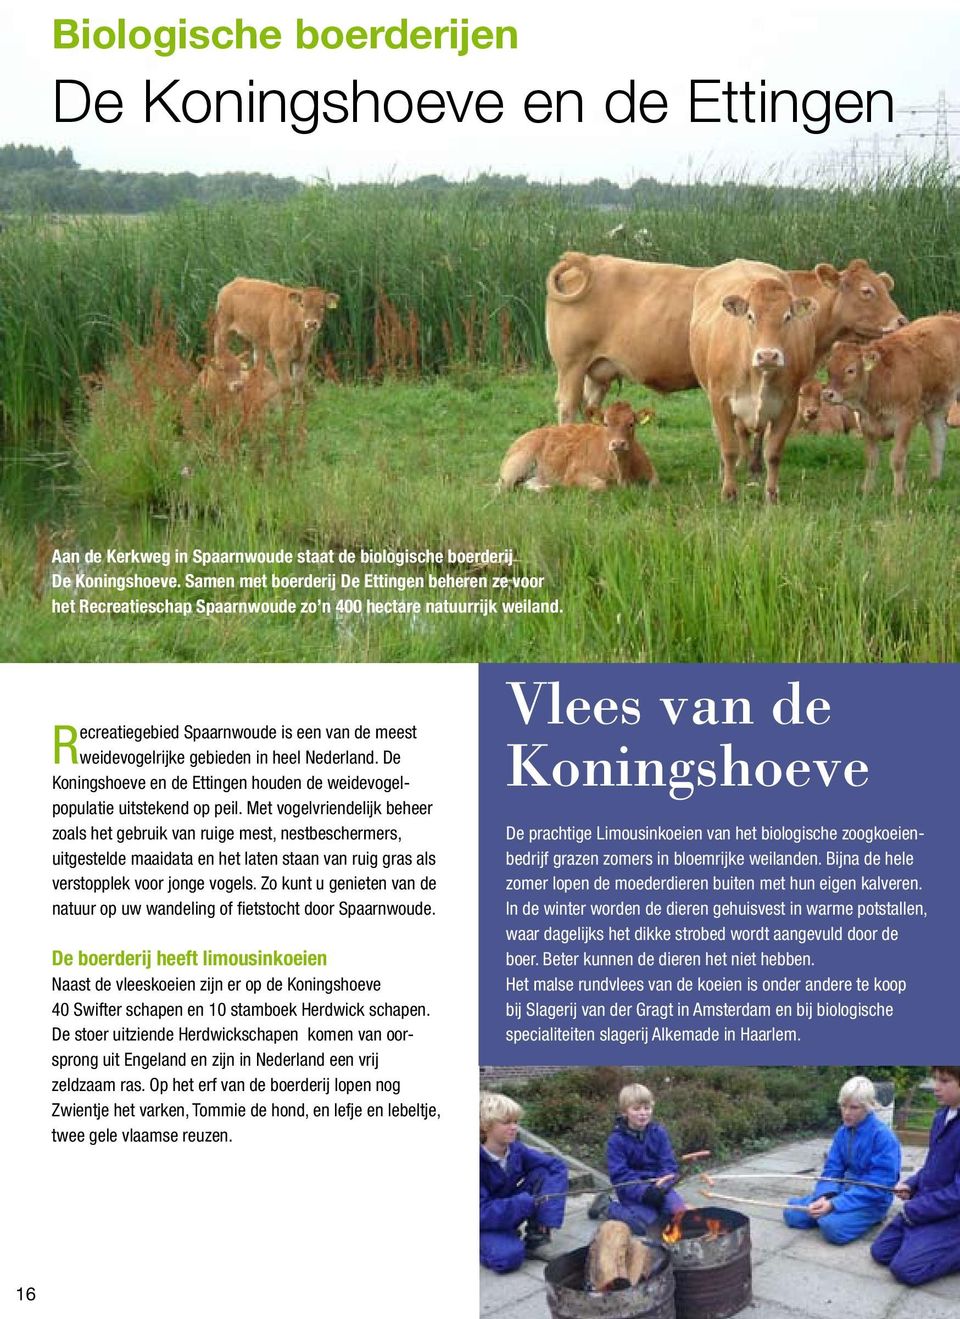 Recreatiegebied Spaarnwoude is een van de meest weidevogelrijke gebieden in heel Nederland. De Koningshoeve en de Ettingen houden de weidevogelpopulatie uitstekend op peil.